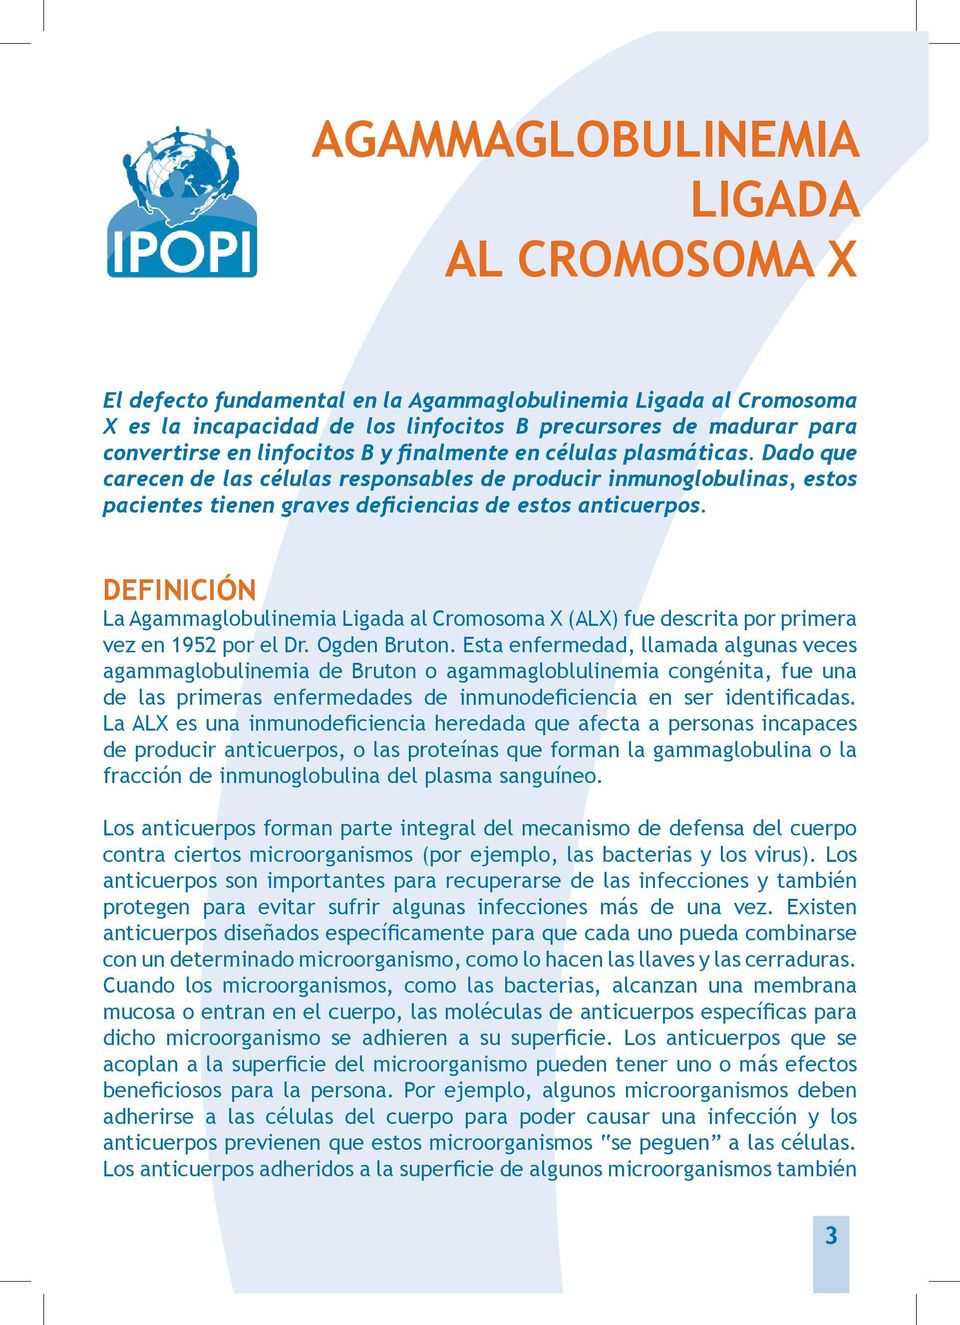 DEFINICIÓN La Agammaglobulinemia Ligada al Cromosoma X (ALX) fue descrita por primera vez en 1952 por el Dr. Ogden Bruton.